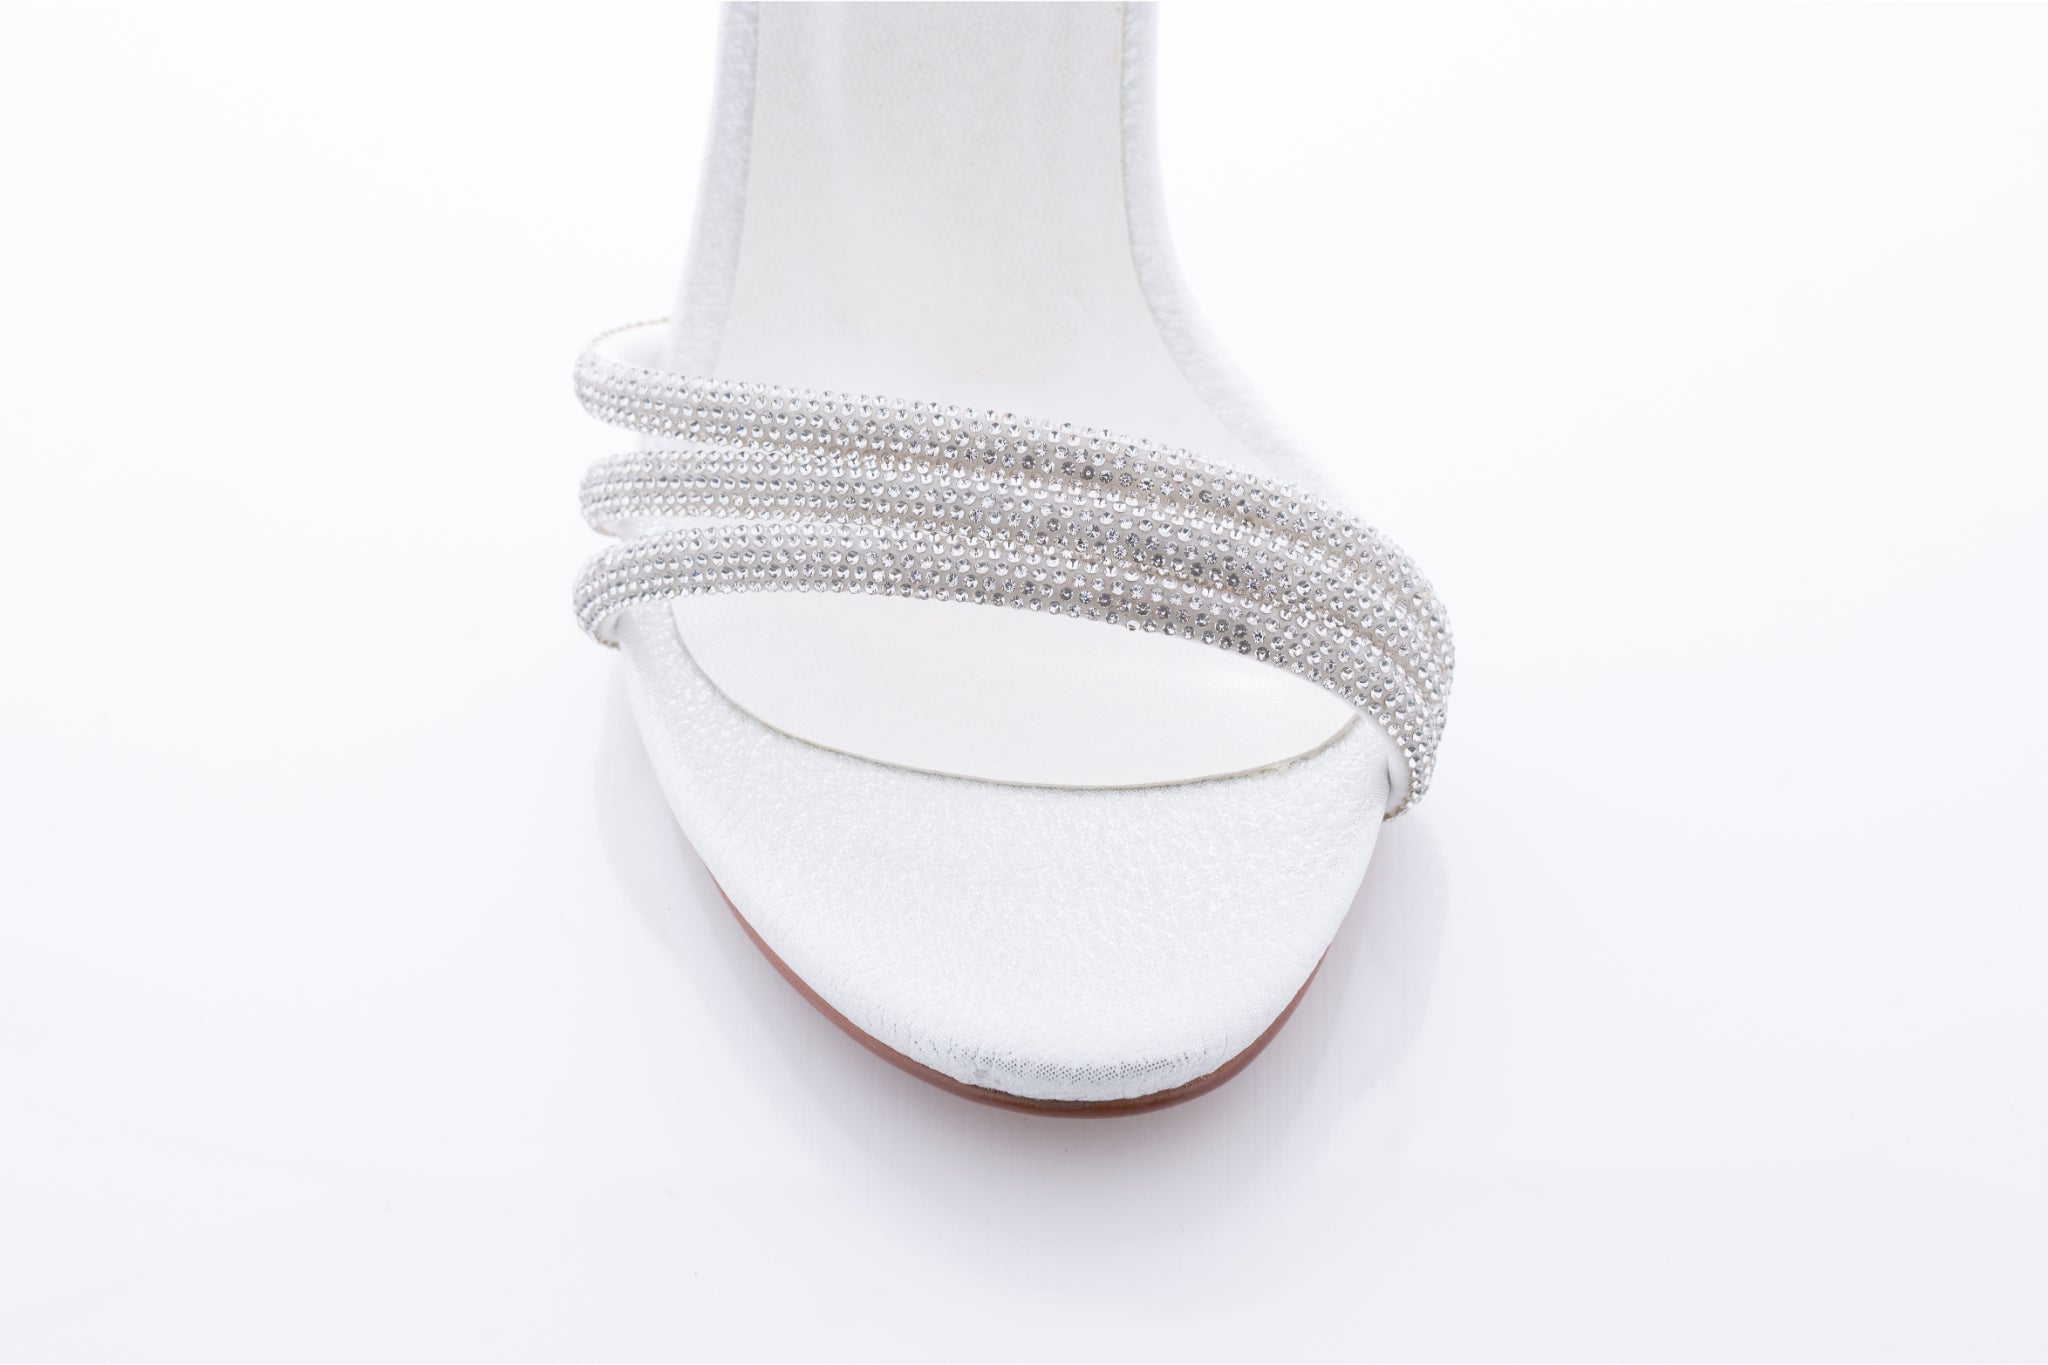 Sandale dama casual piele ecologica 6700 alb croco saten